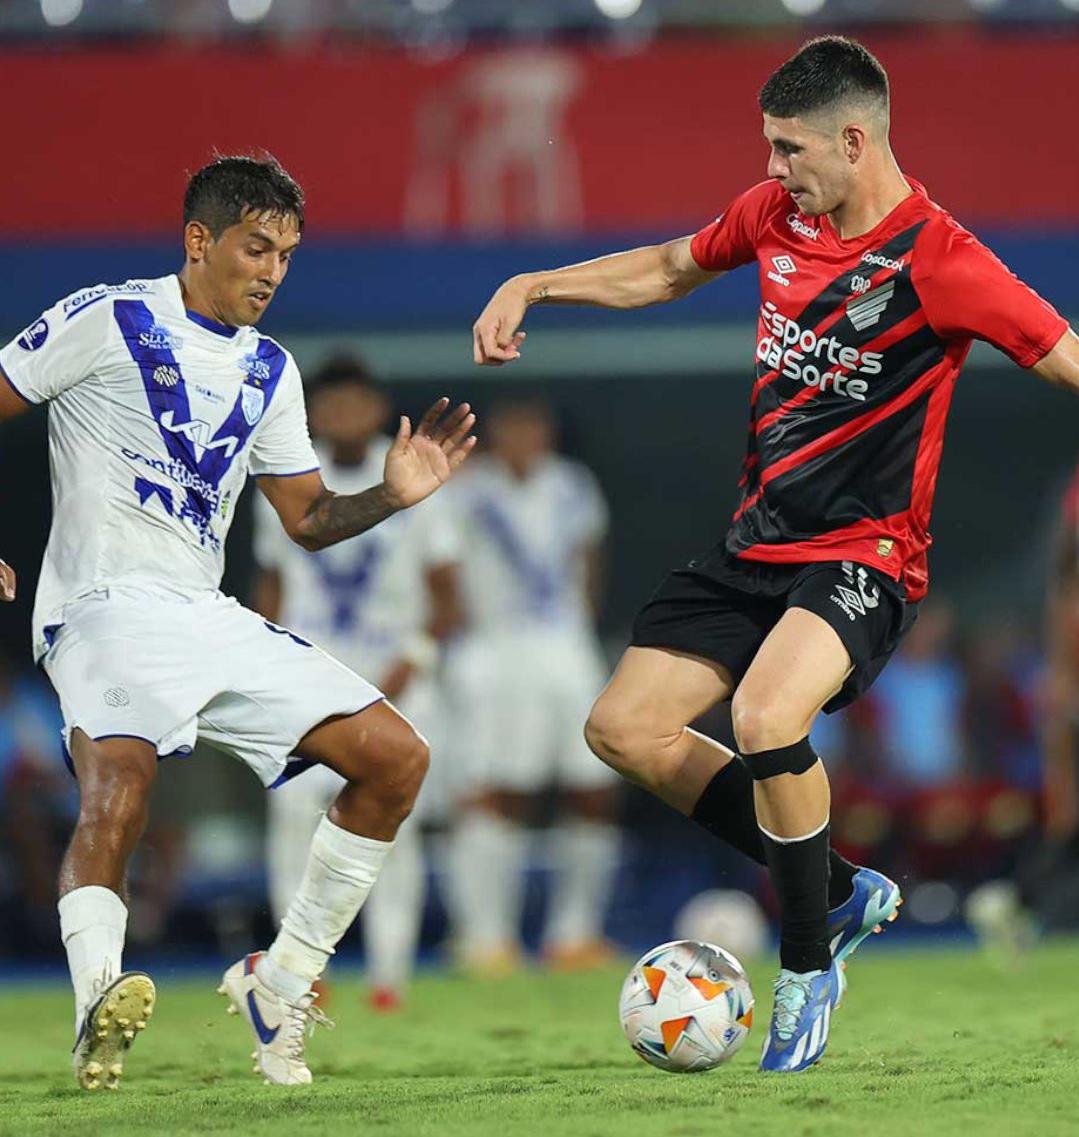 Bruno Zapelli participó en la goleada de Paranense en Copa Sudamericana | Canal Showsport